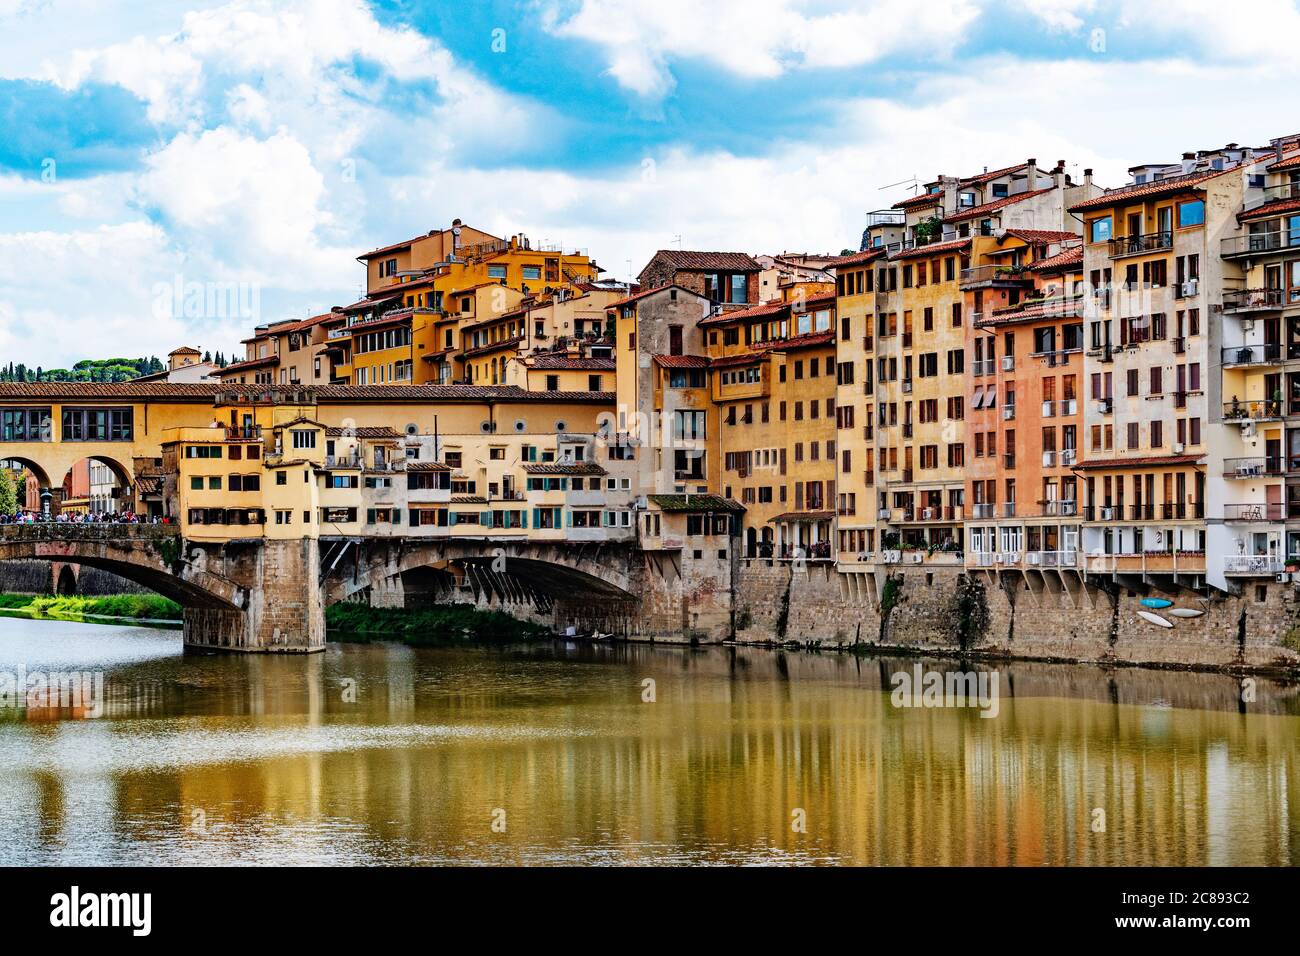 Die berühmte historische ponte vecchio überspannt den Fluss arno, der durch die Stadt florenz in der toskana, italien, fließt. Stockfoto